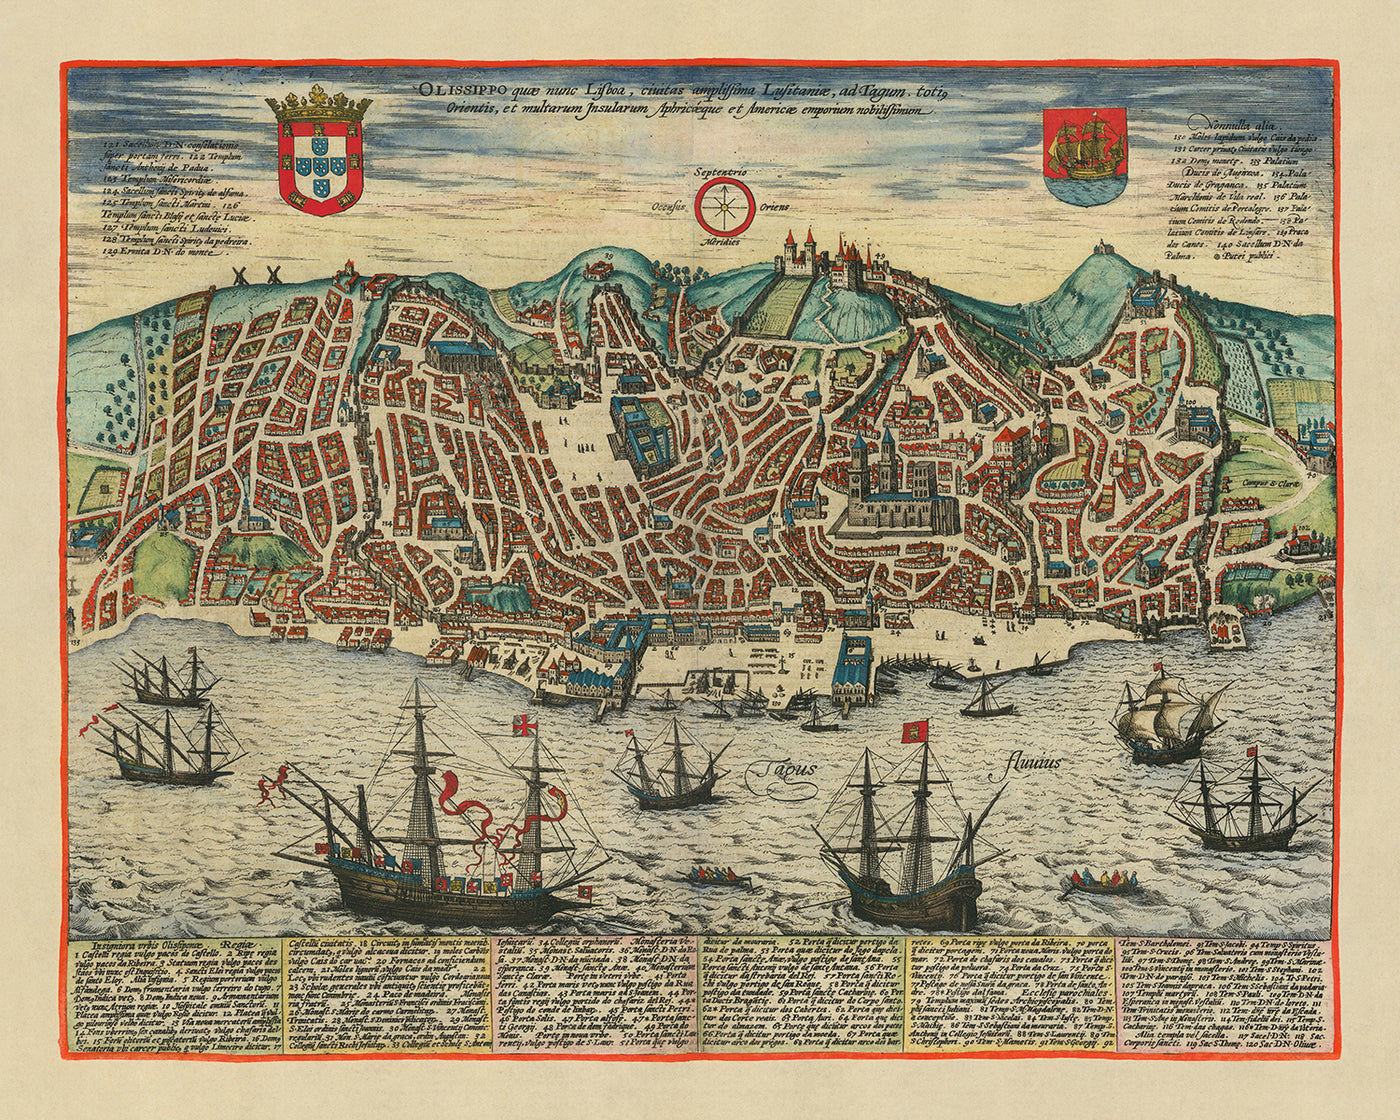 Ancienne carte Birdseye de Lisbonne par Braun, 1596 : Castelo de São Jorge, Catedral Se, Baixa, Bairro Alto, Tage